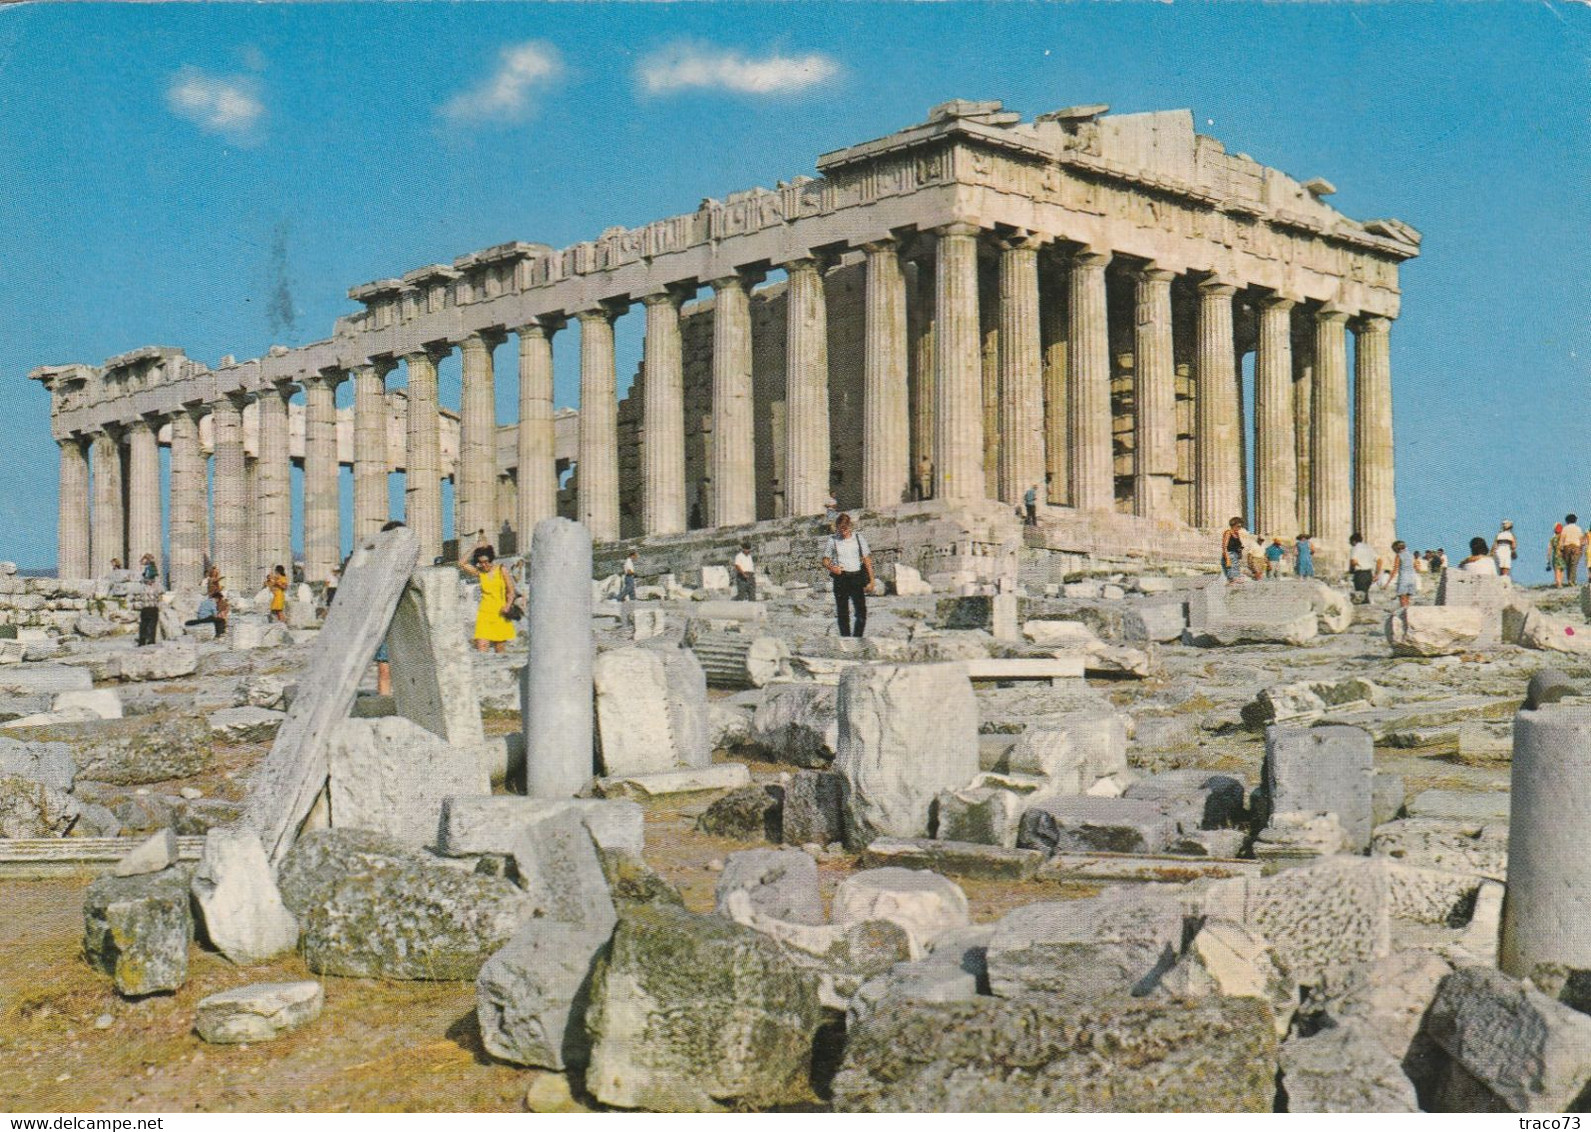 GRECIA  /  ITALIA  -  Card _ Cartolina - Storia Postale